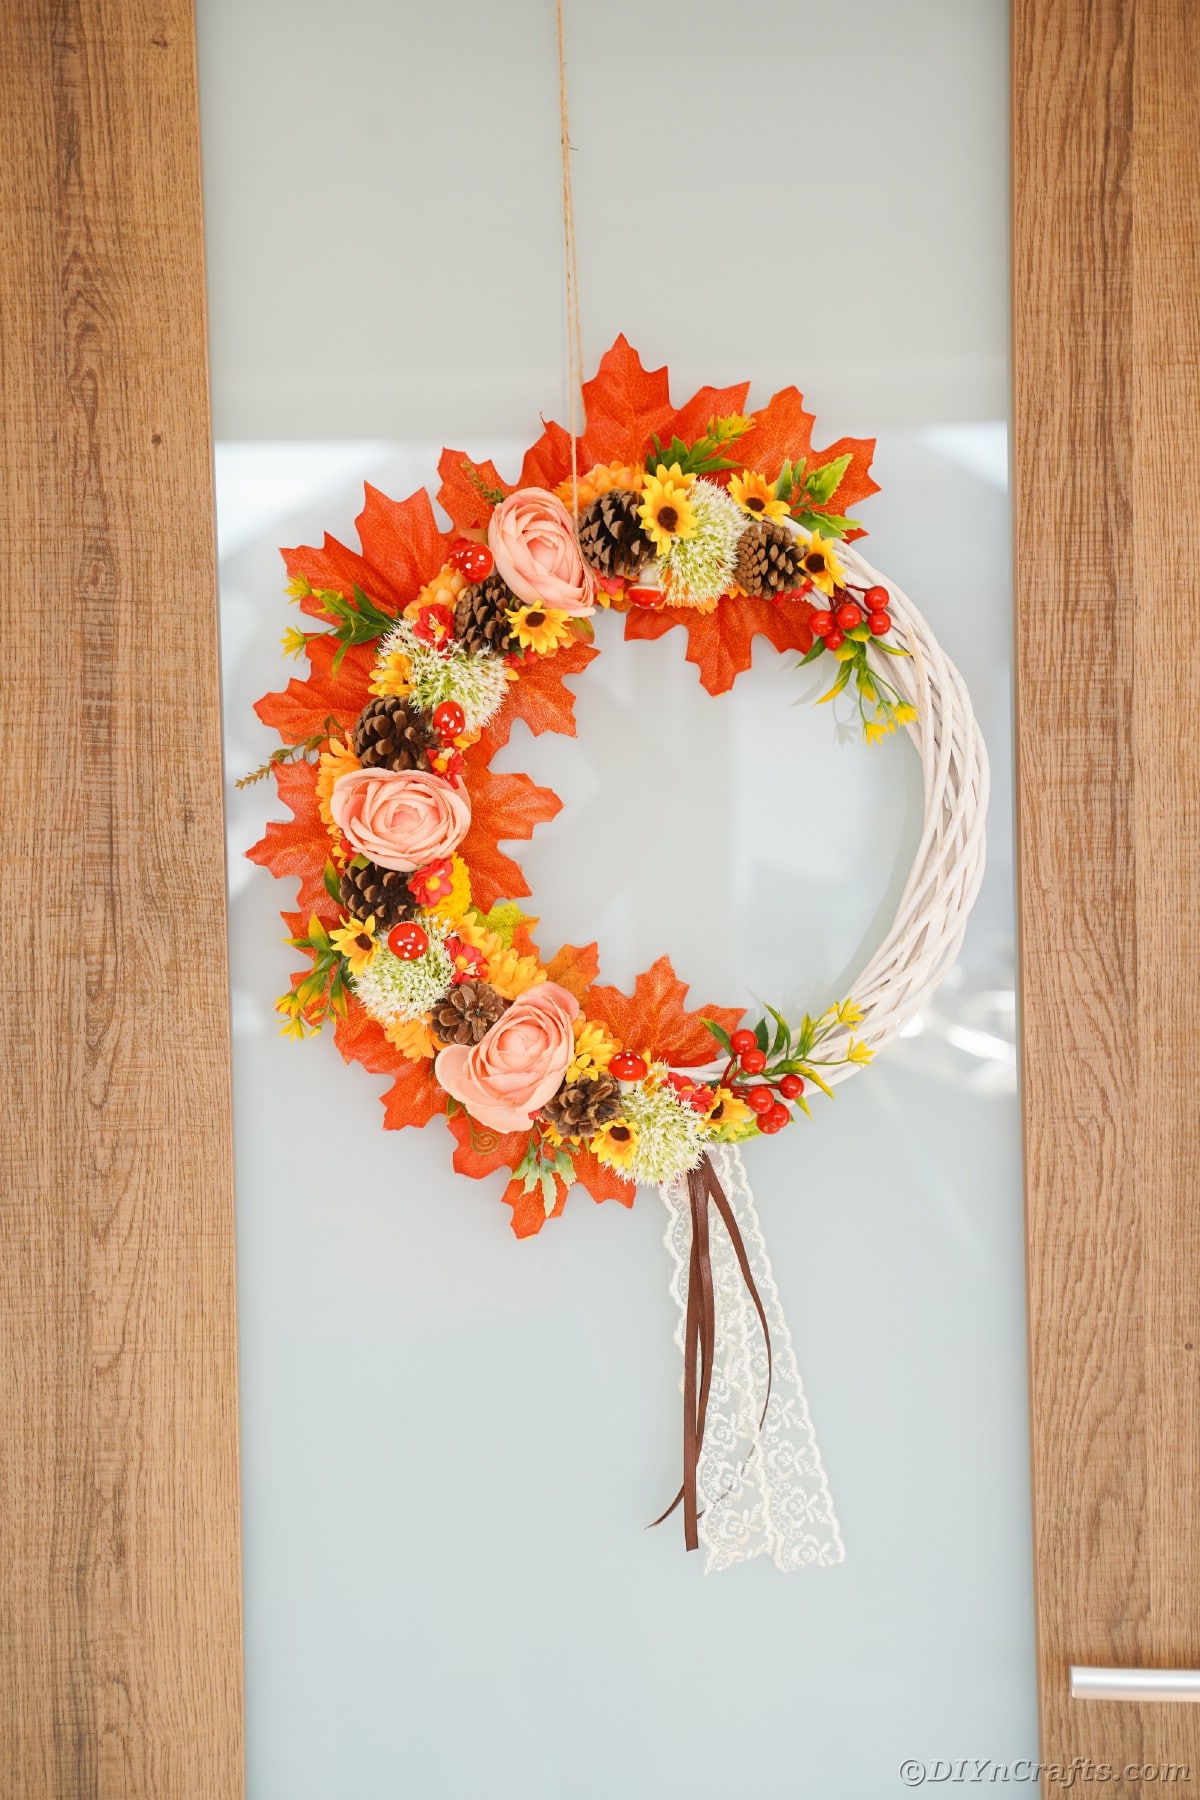 Orange flowers and pinecones on white wreath on door